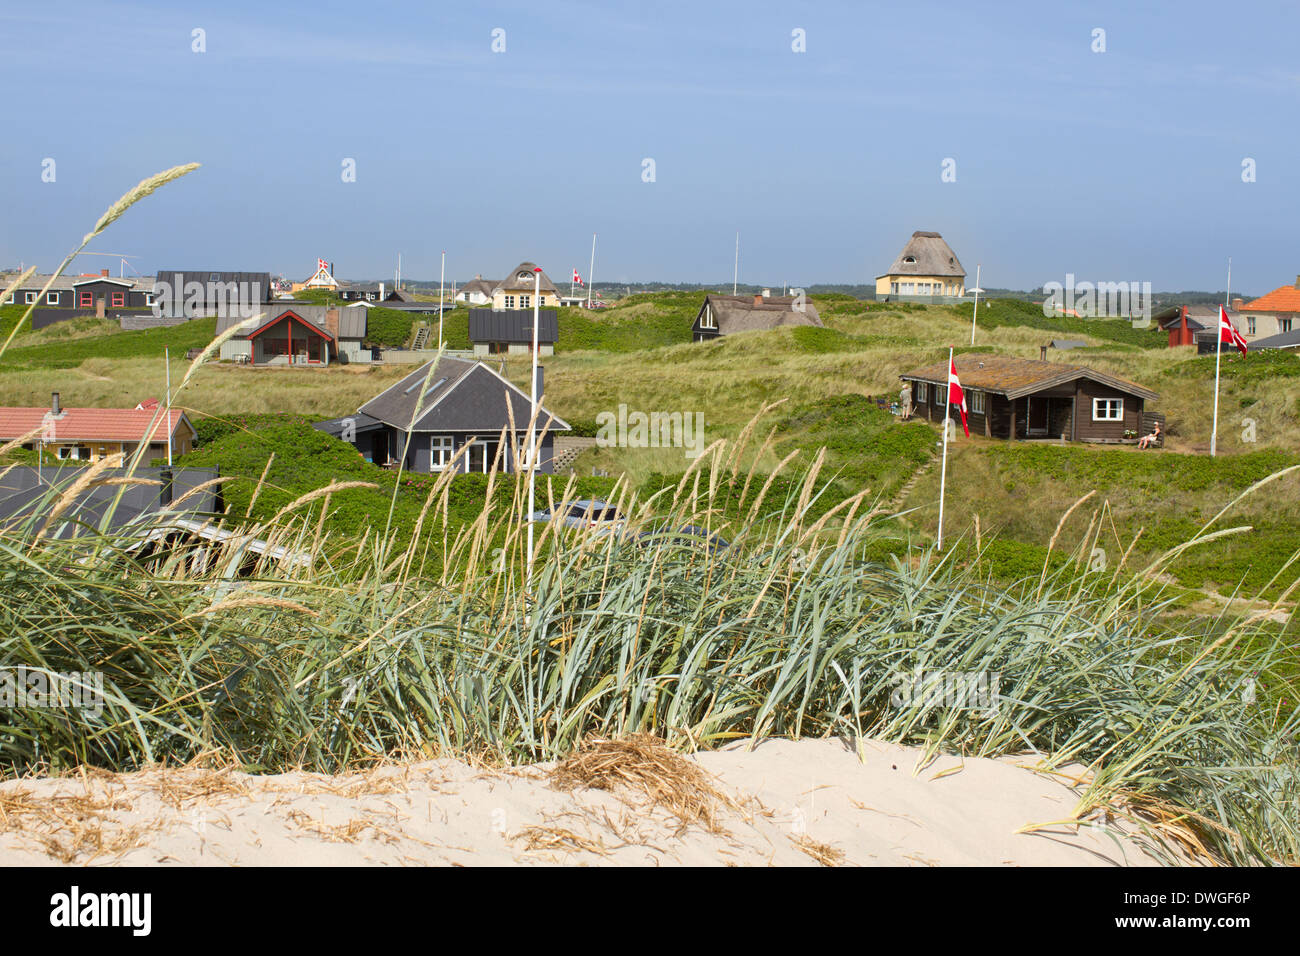 Vista panorámica de casas de verano en las costas occidentales del Mar del Norte de Jutlandia, Dinamarca. Hay sol y el cielo es azul brillante. Foto de stock